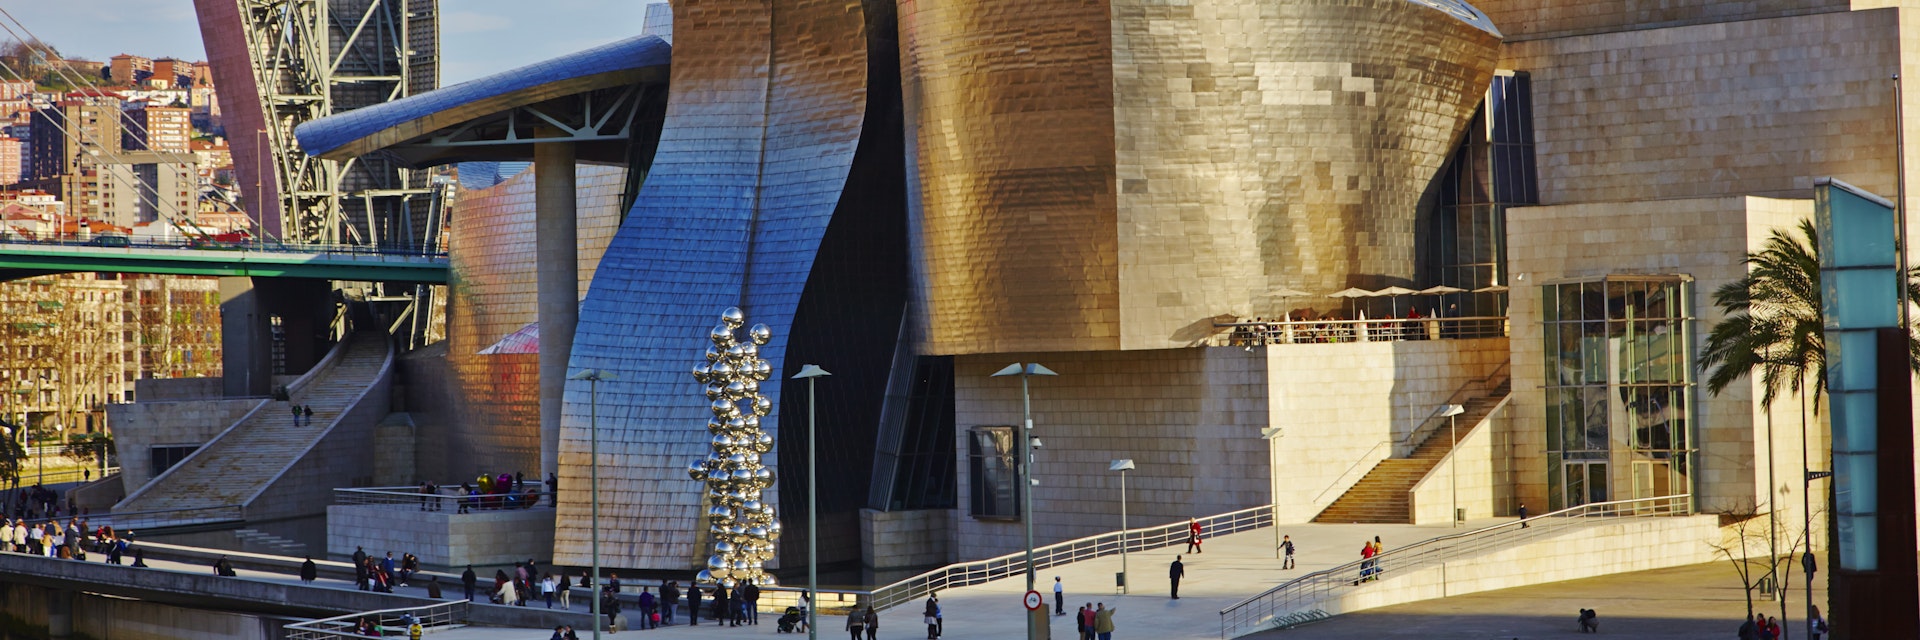 Guggenheim Museum, Bilbao, Euskadi, Spain, Europe